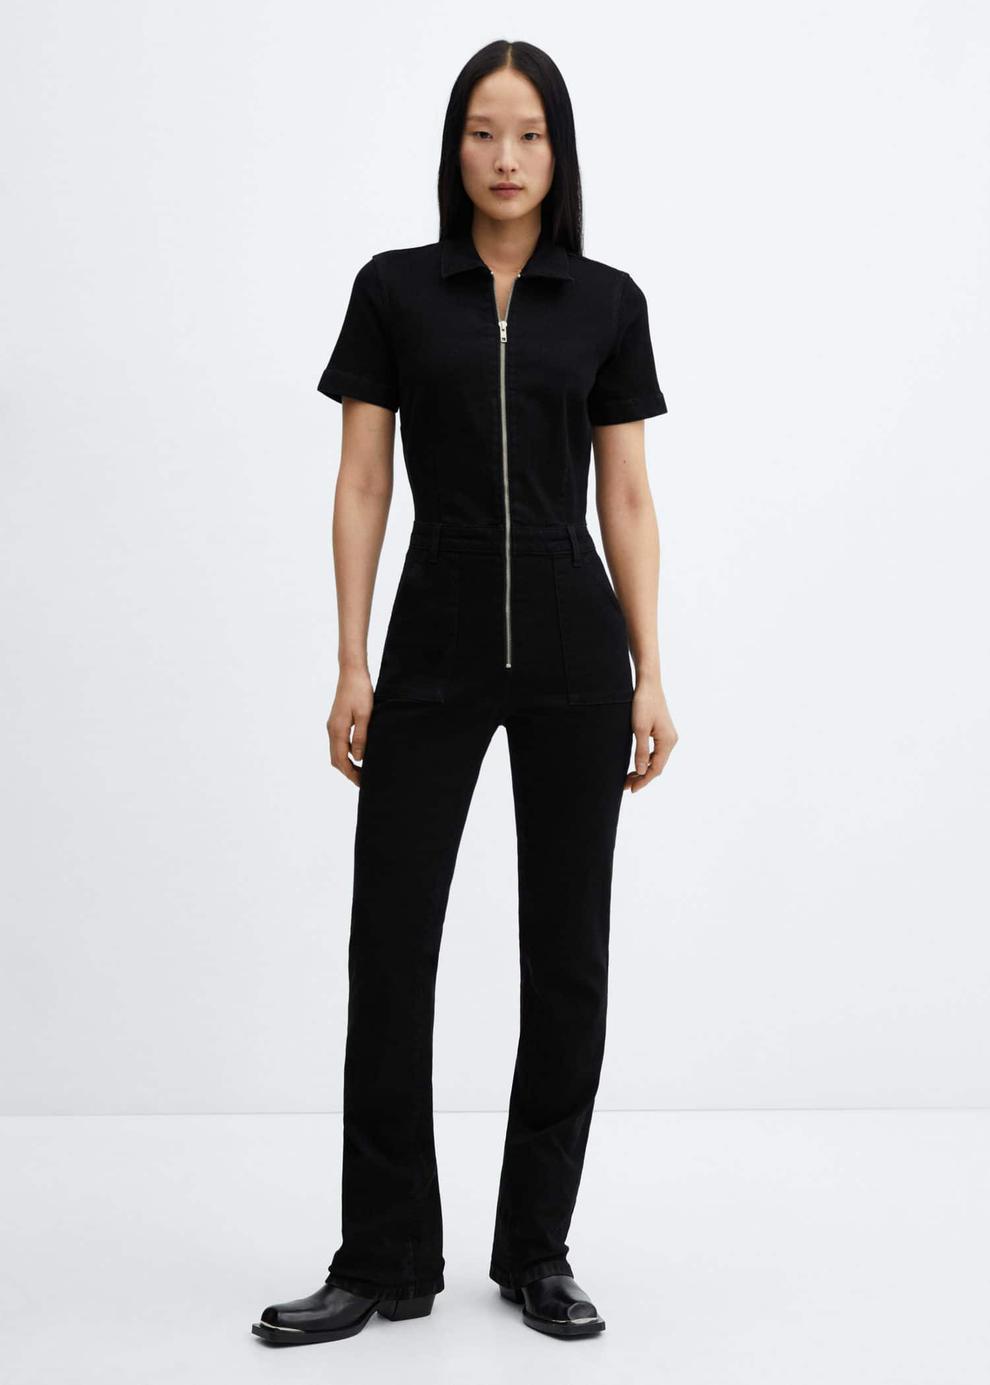 Denim zipper jumpsuit offers at $79.99 in Mango